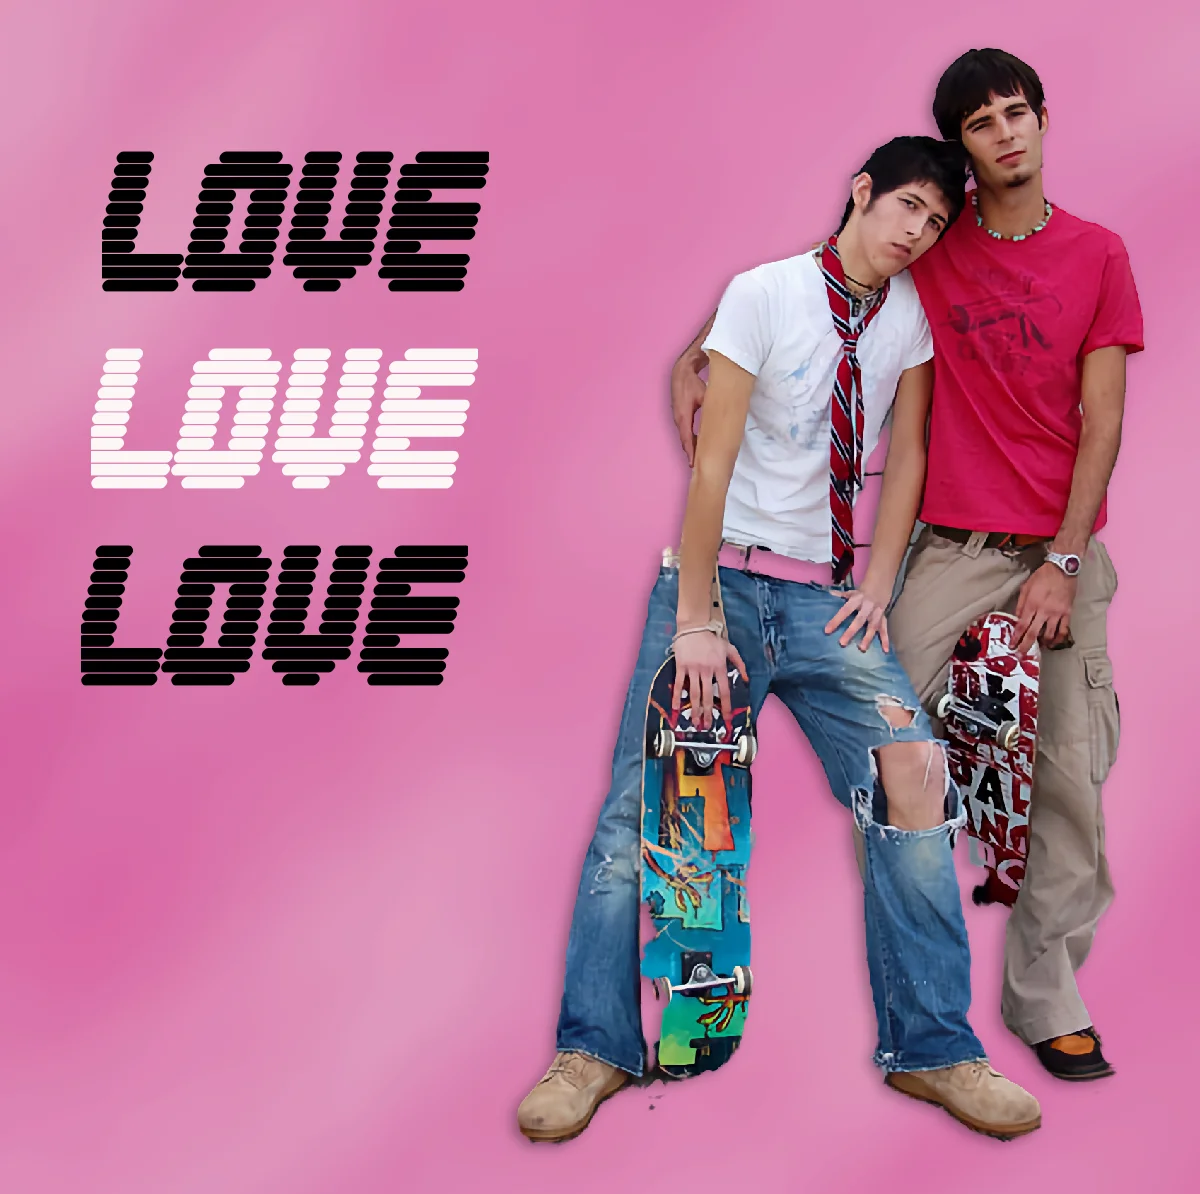 Gay Love LGBTQ Blog